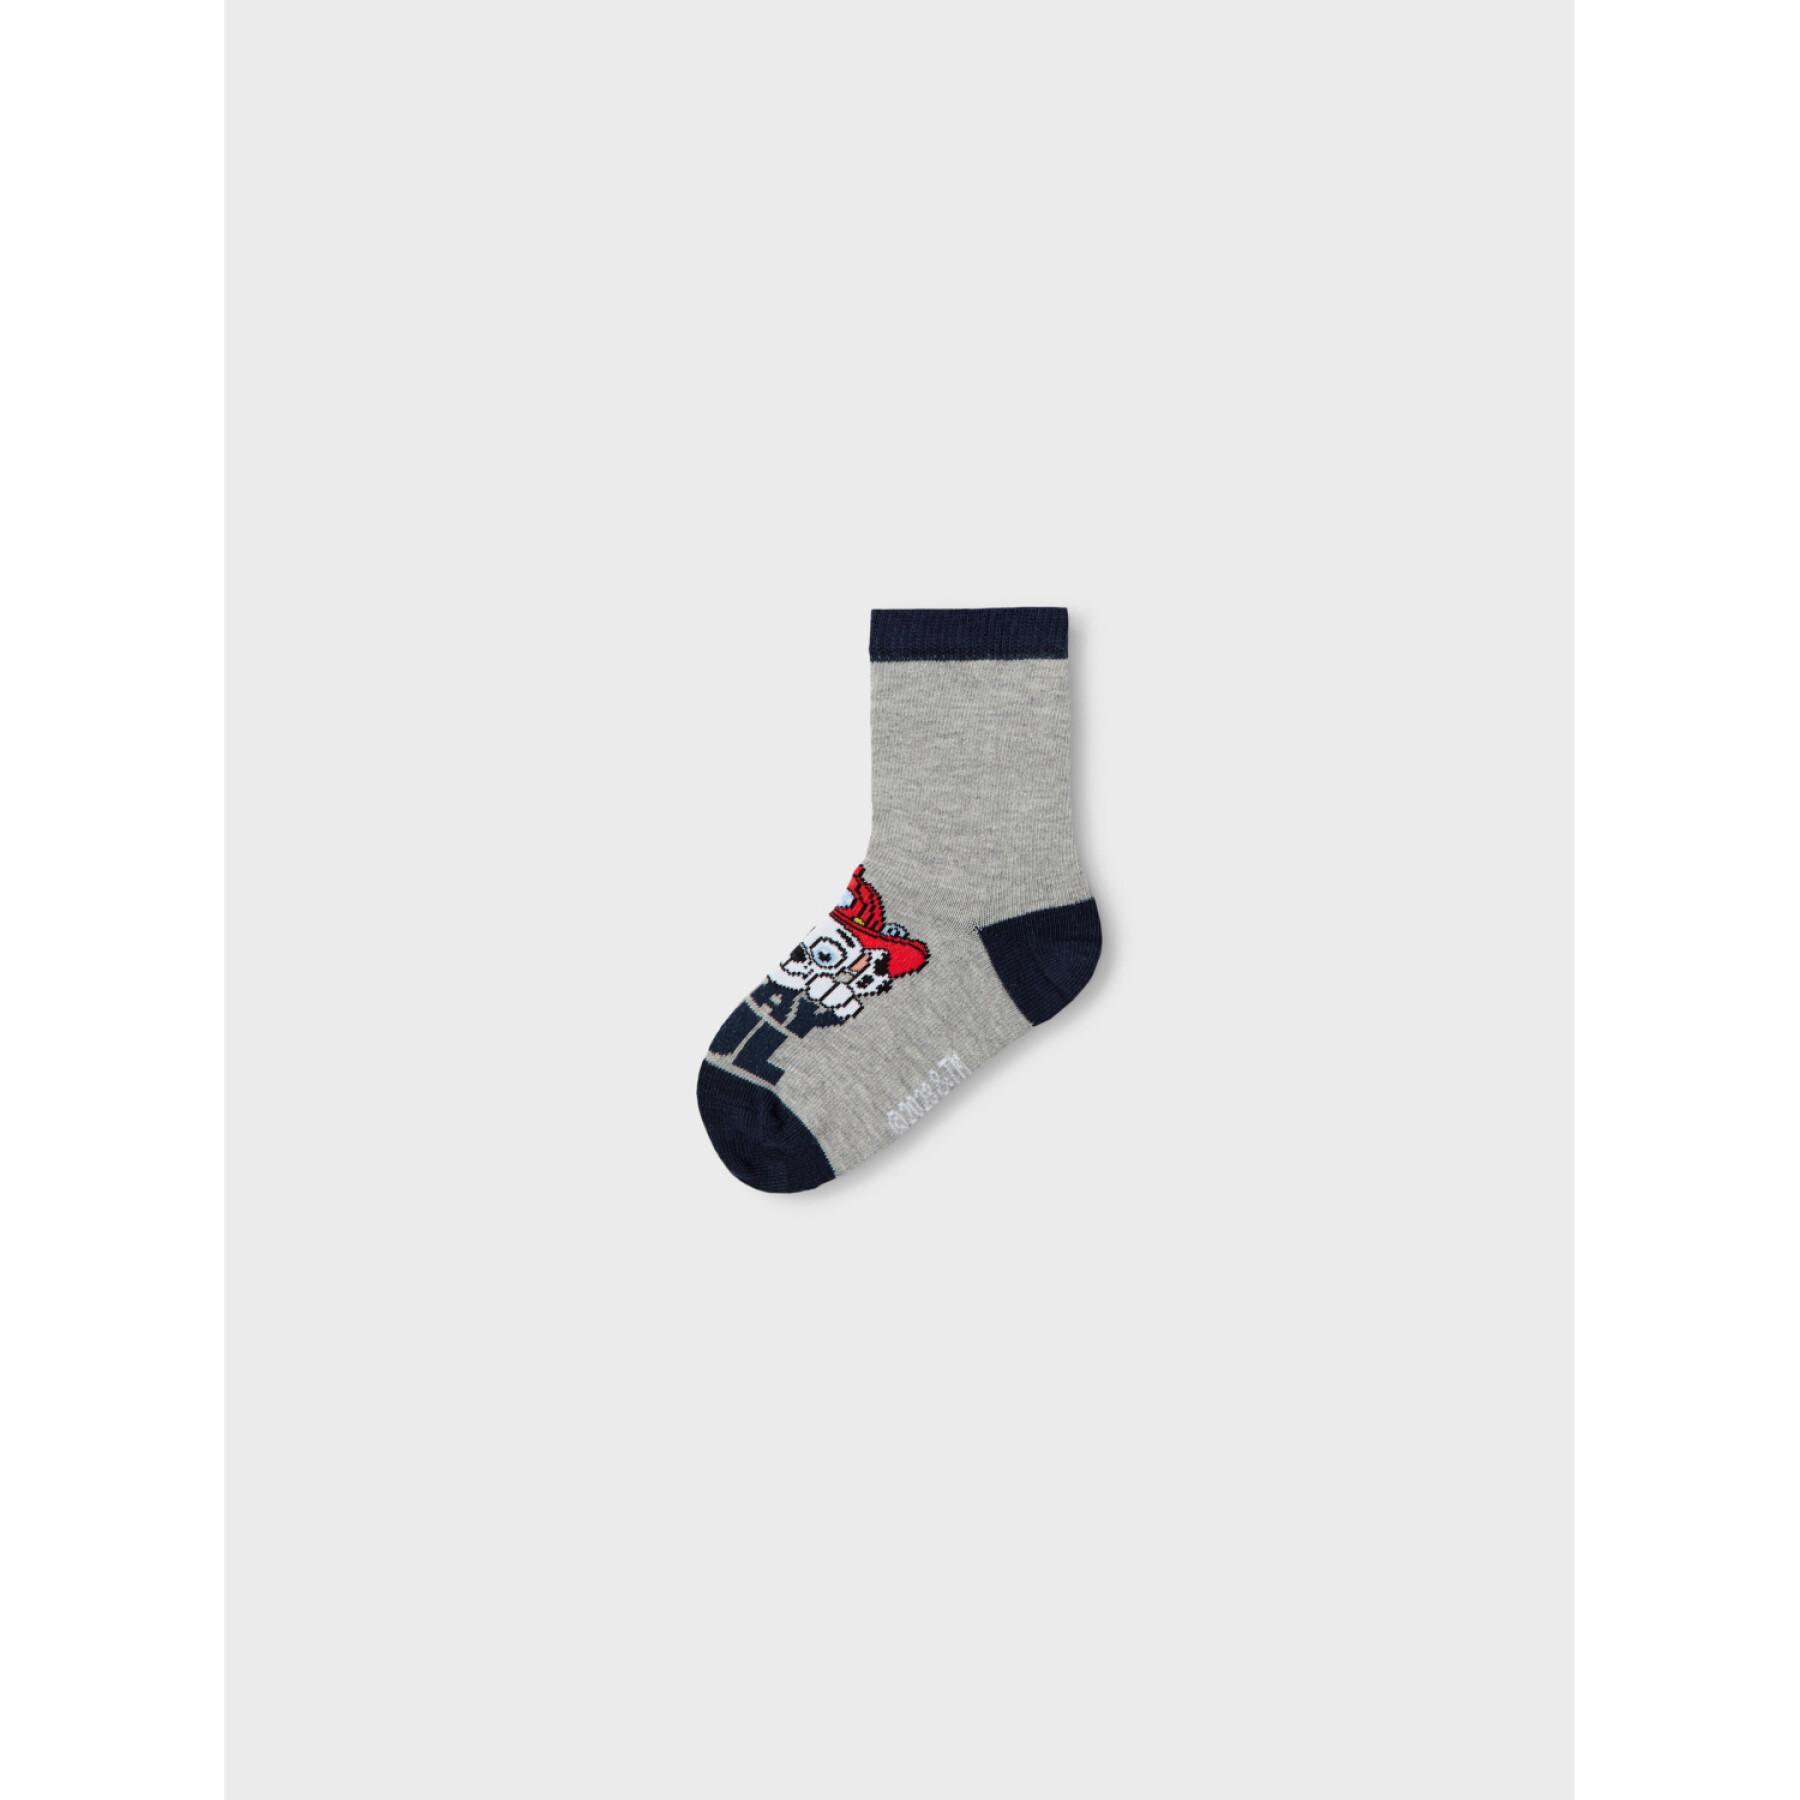 Socken für Jungen Name it Jion Pawpatrol (x3)